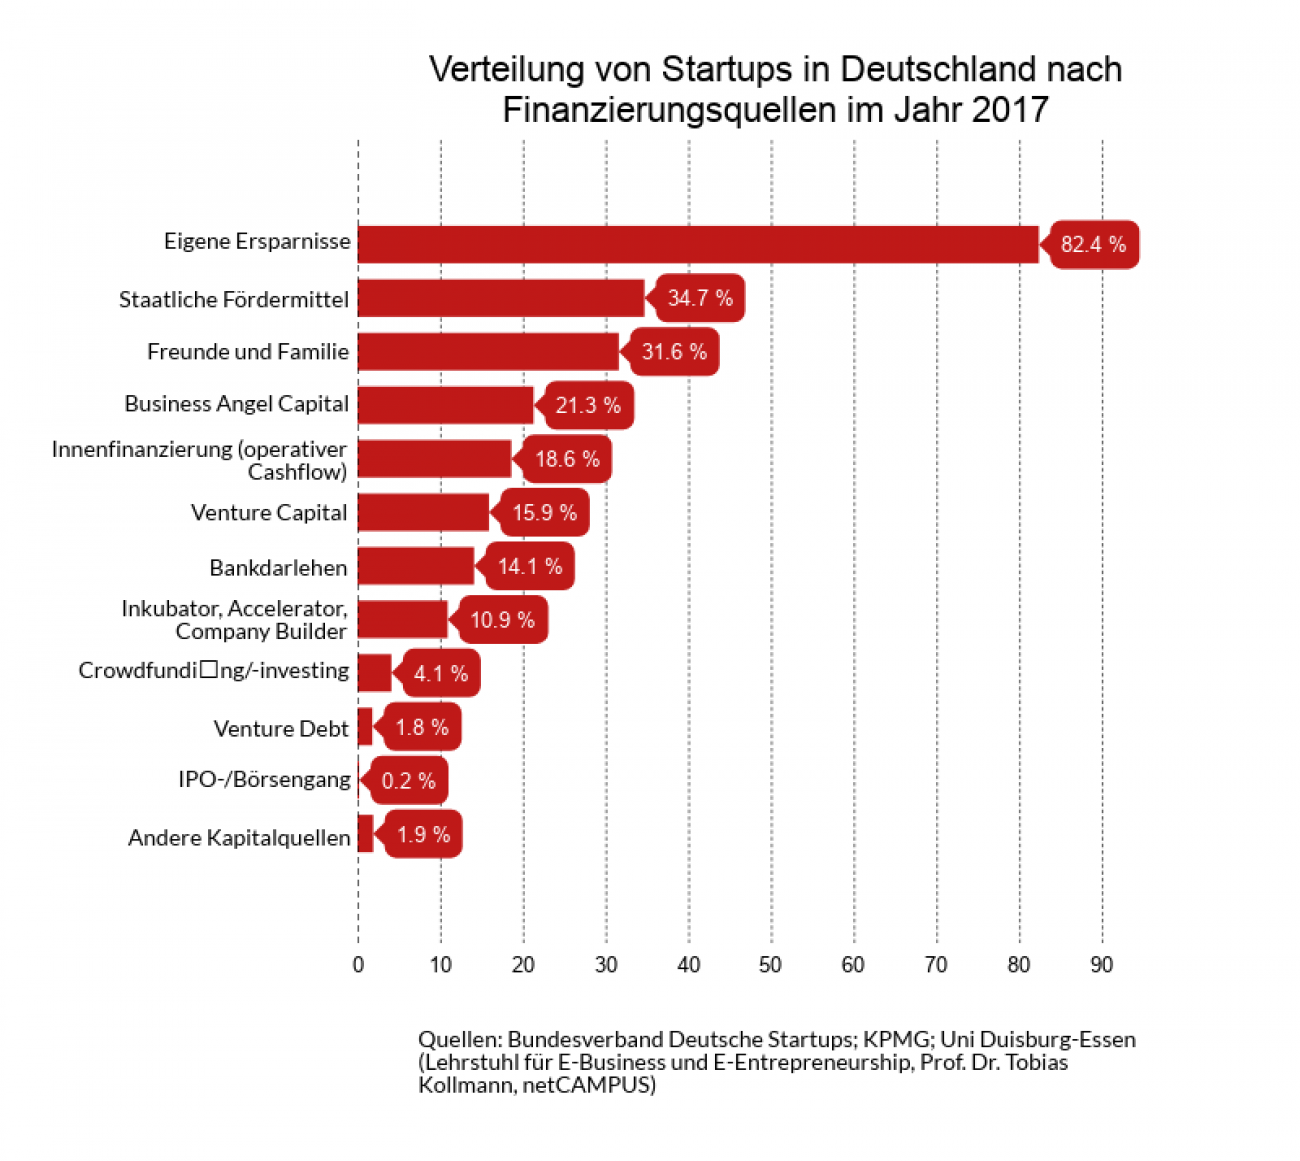 Verteilung Startups in Deutschland nach Finanzierungsquellen